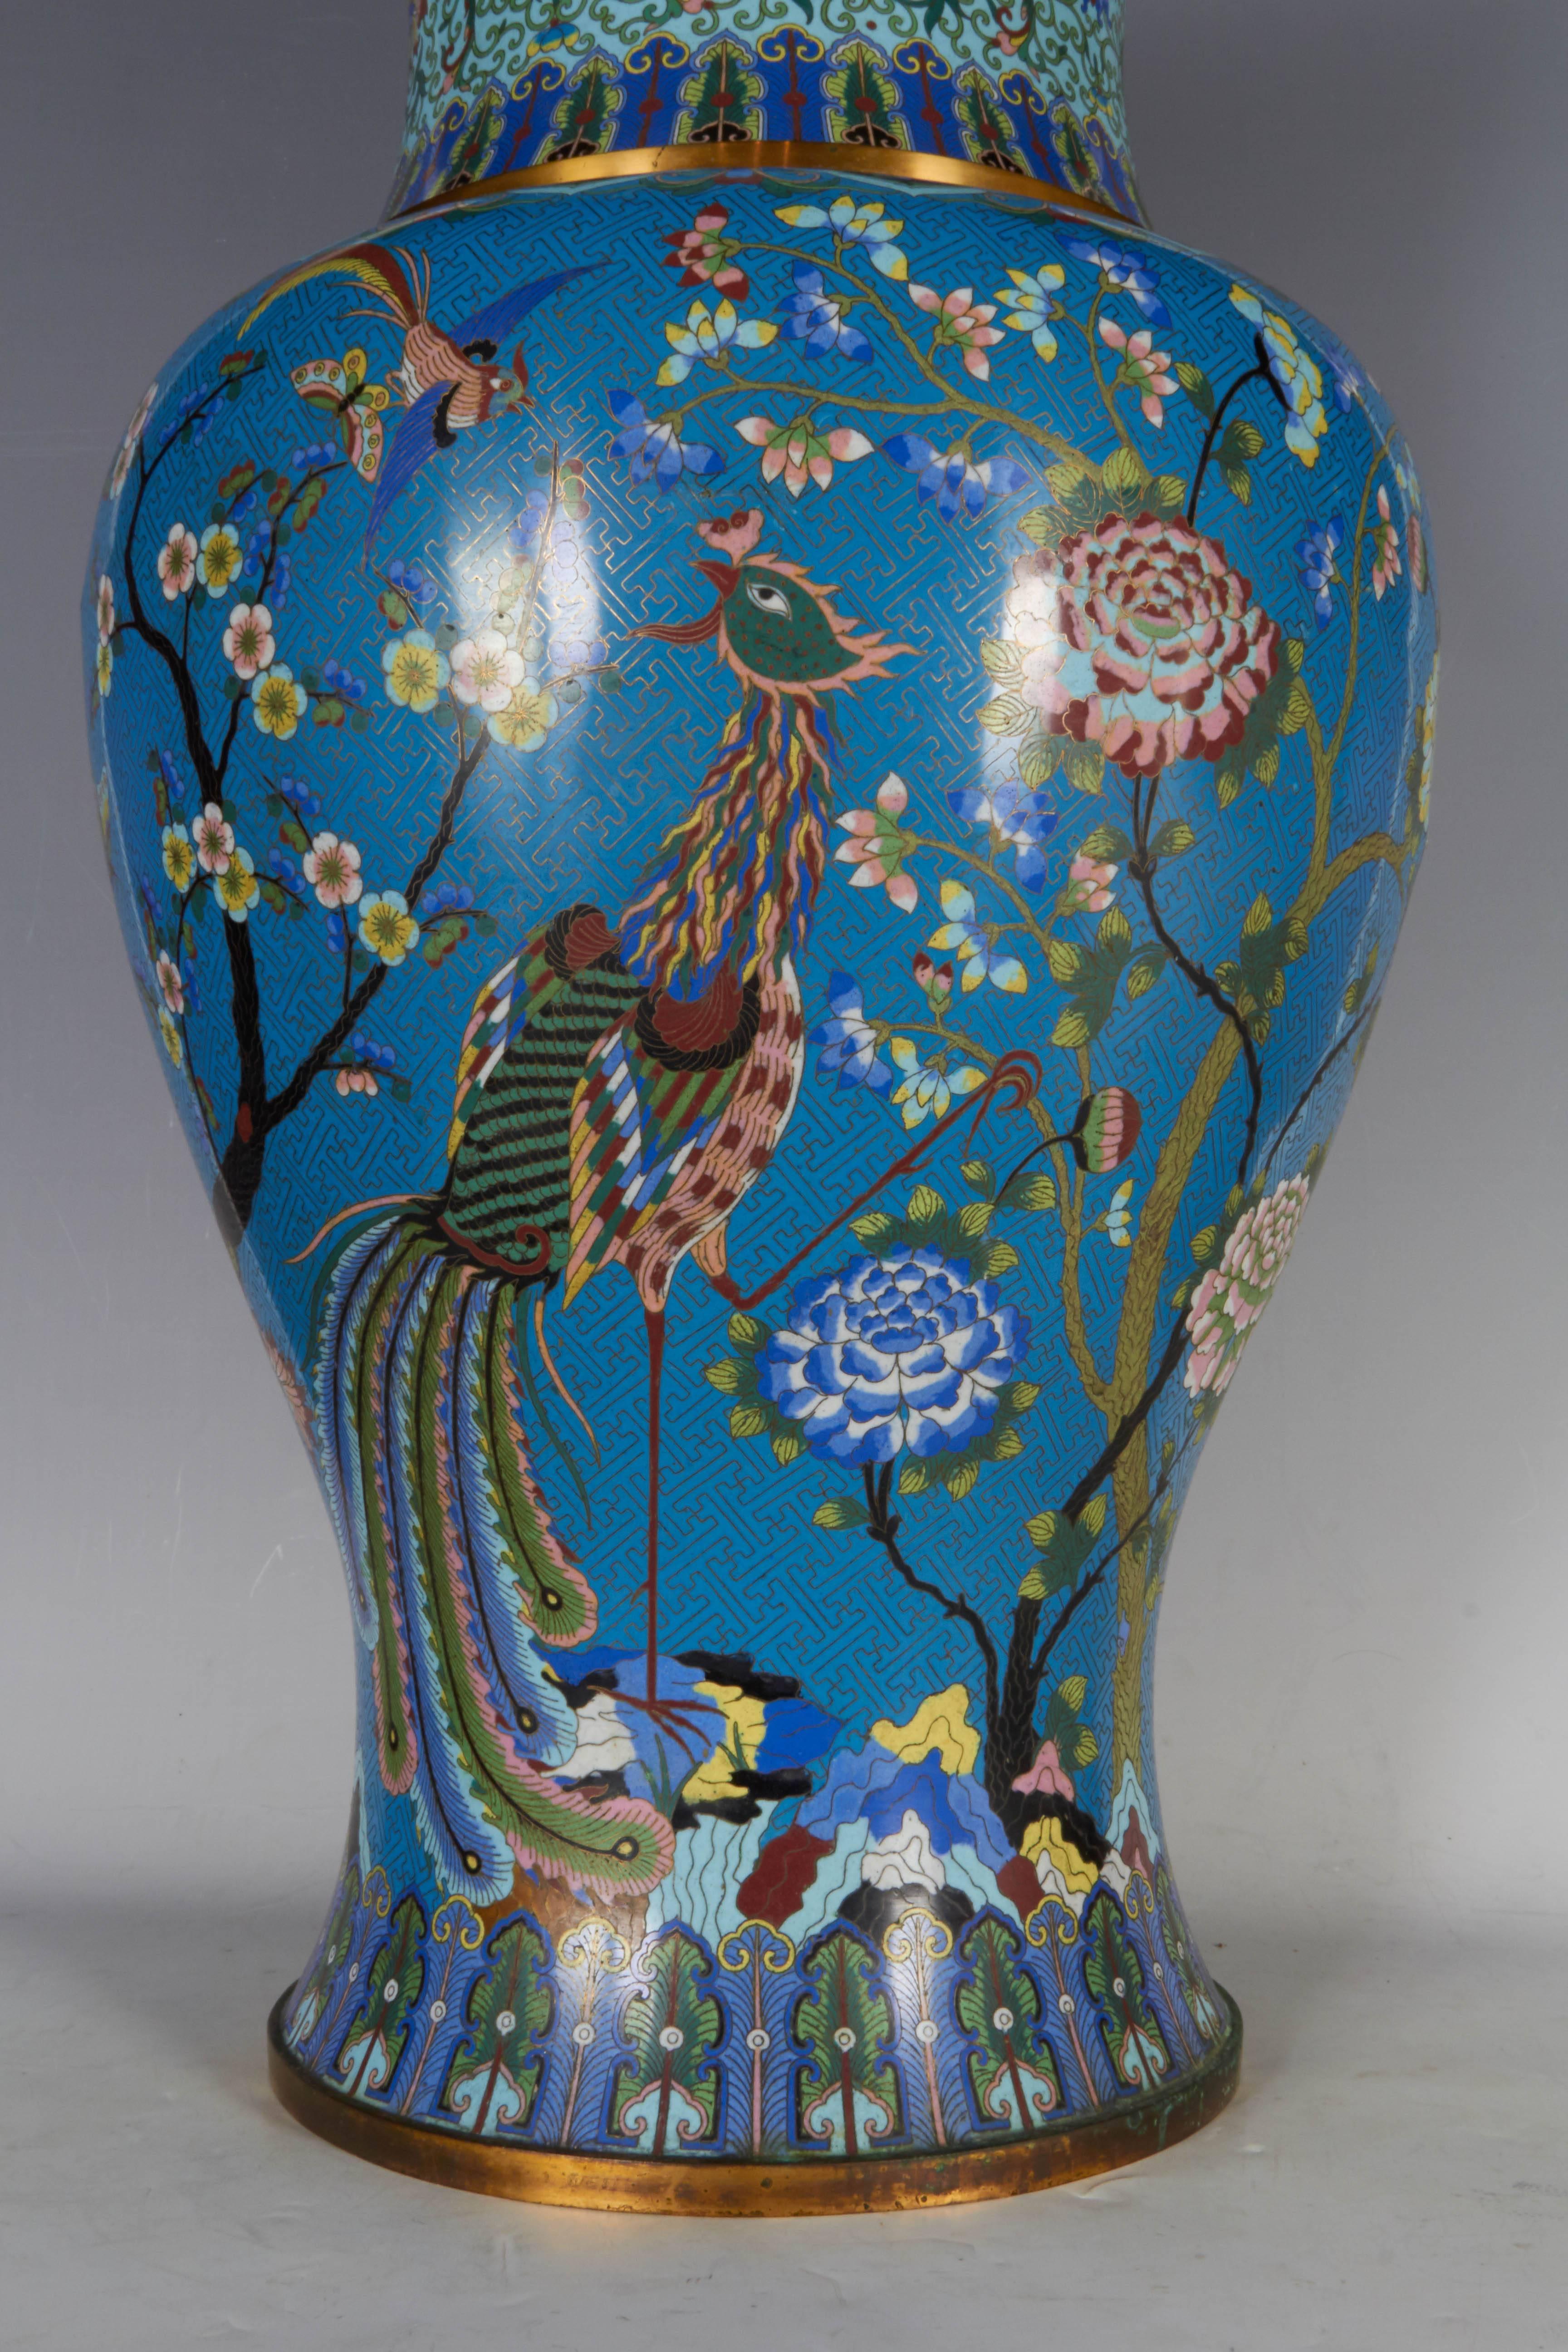 Vase ou urne massive chinoise en cloisonné bleu représentant un phénix impérial coloré avec des fils de bronze doré parmi des oiseaux et des papillons dans un jardin impérial de fleurs de magnolia, de chrysanthèmes, avec des tiges et des feuilles